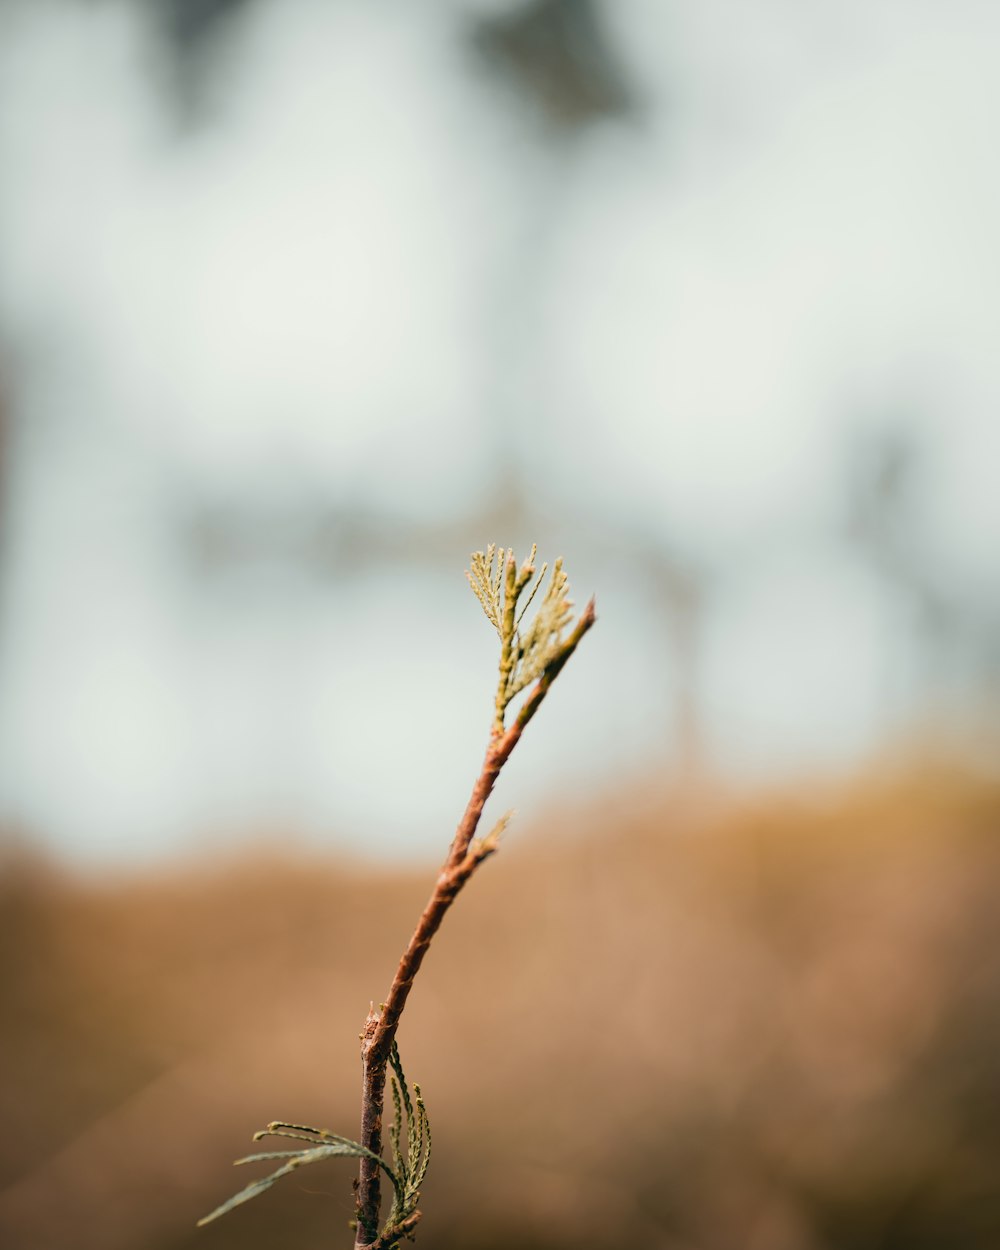 a small twig on a thin twig